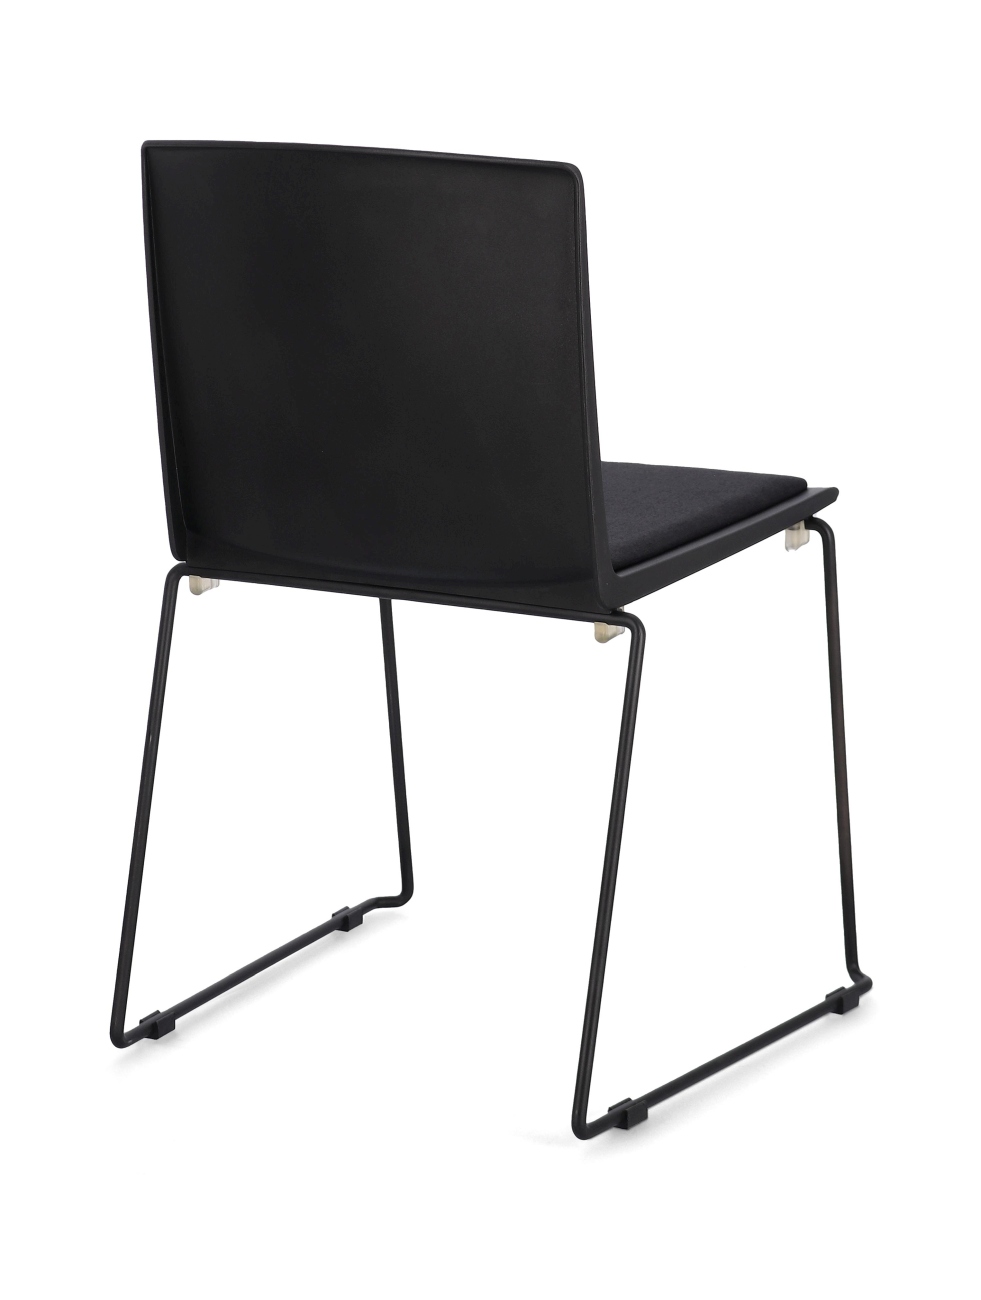 Der Esszimmerstuhl Giulia überzeugt mit seinem modernen Stil. Gefertigt wurde er aus Kunststoff, welches einen schwarzen Farbton besitzt. Das Gestell ist aus Metall und hat eine schwarze Farbe. Der Stuhl besitzt eine Sitzhöhe von 46 cm.